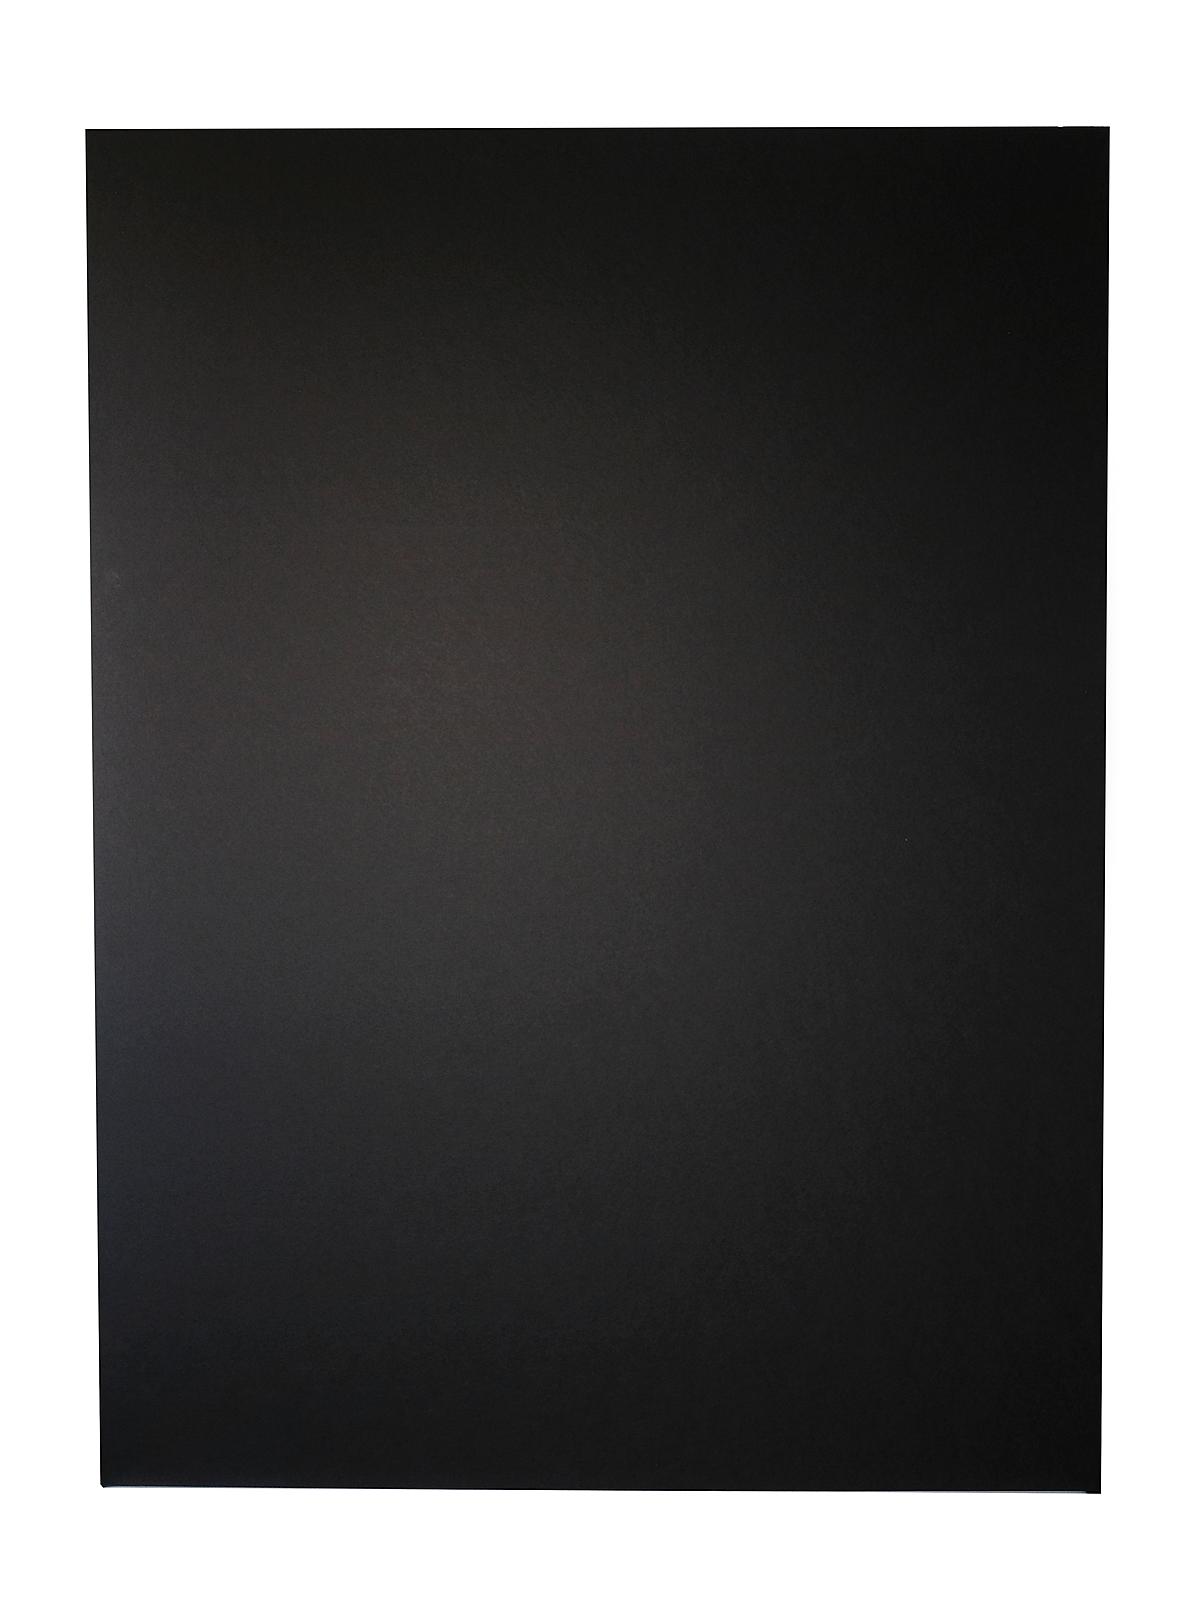 Foam Board Black On Black 3 16 In. X 24 In. X 36 In. Each